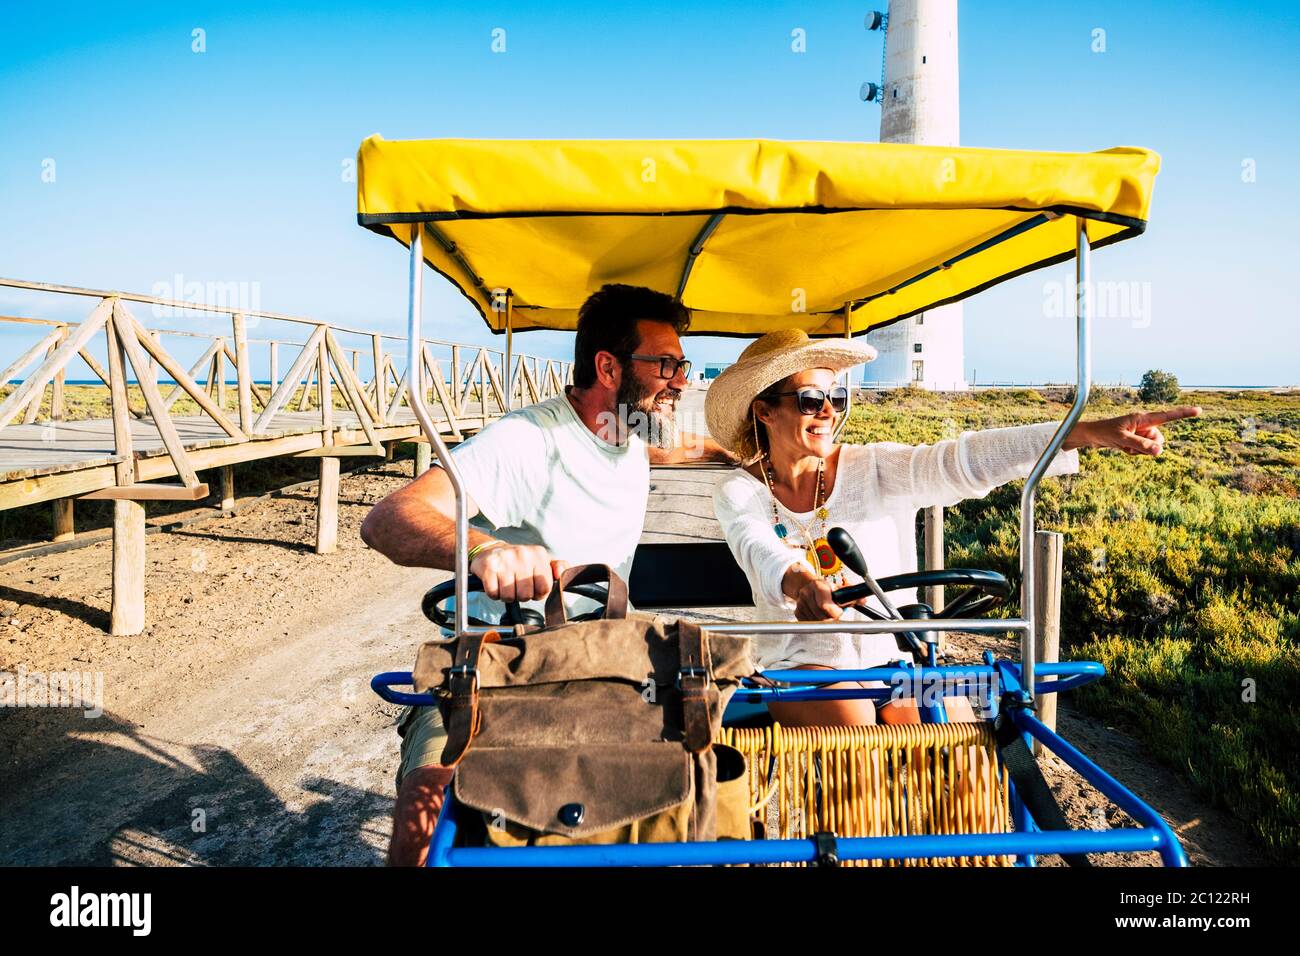 Touristen und Tourismus Menschen Konzept mit fröhlichen und glücklich erwachsenen Paar auf einem surrey Fahrrad genießen die Outdoor-Freizeitaktivitäten im Urlaub Sommer holi Stockfoto